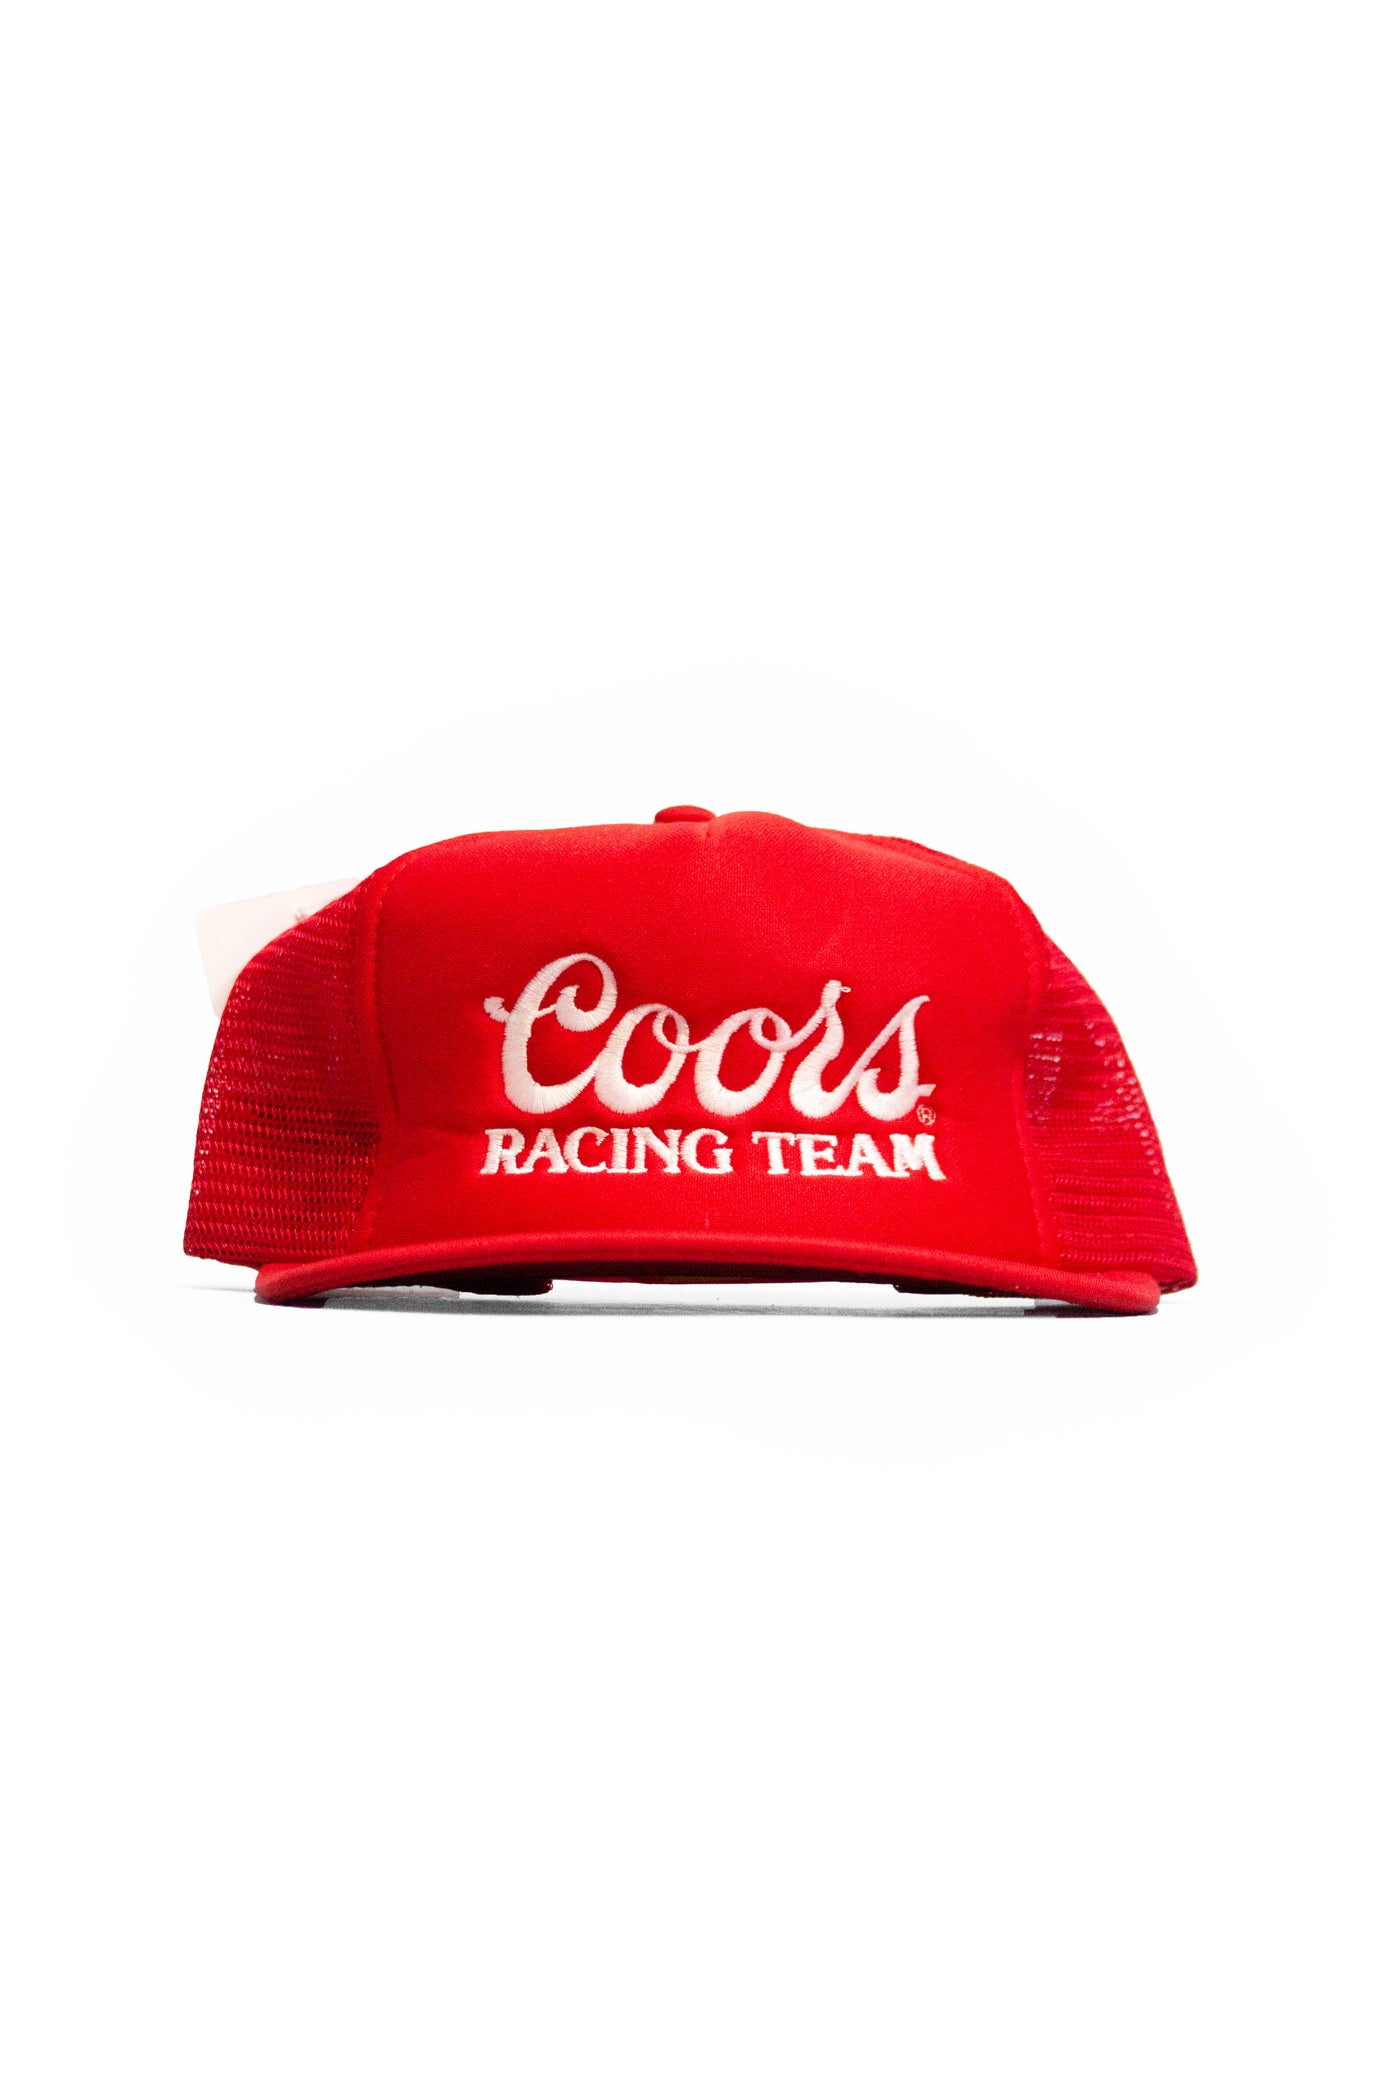 Vintage 90s Coors Racing Team Trucker Hat